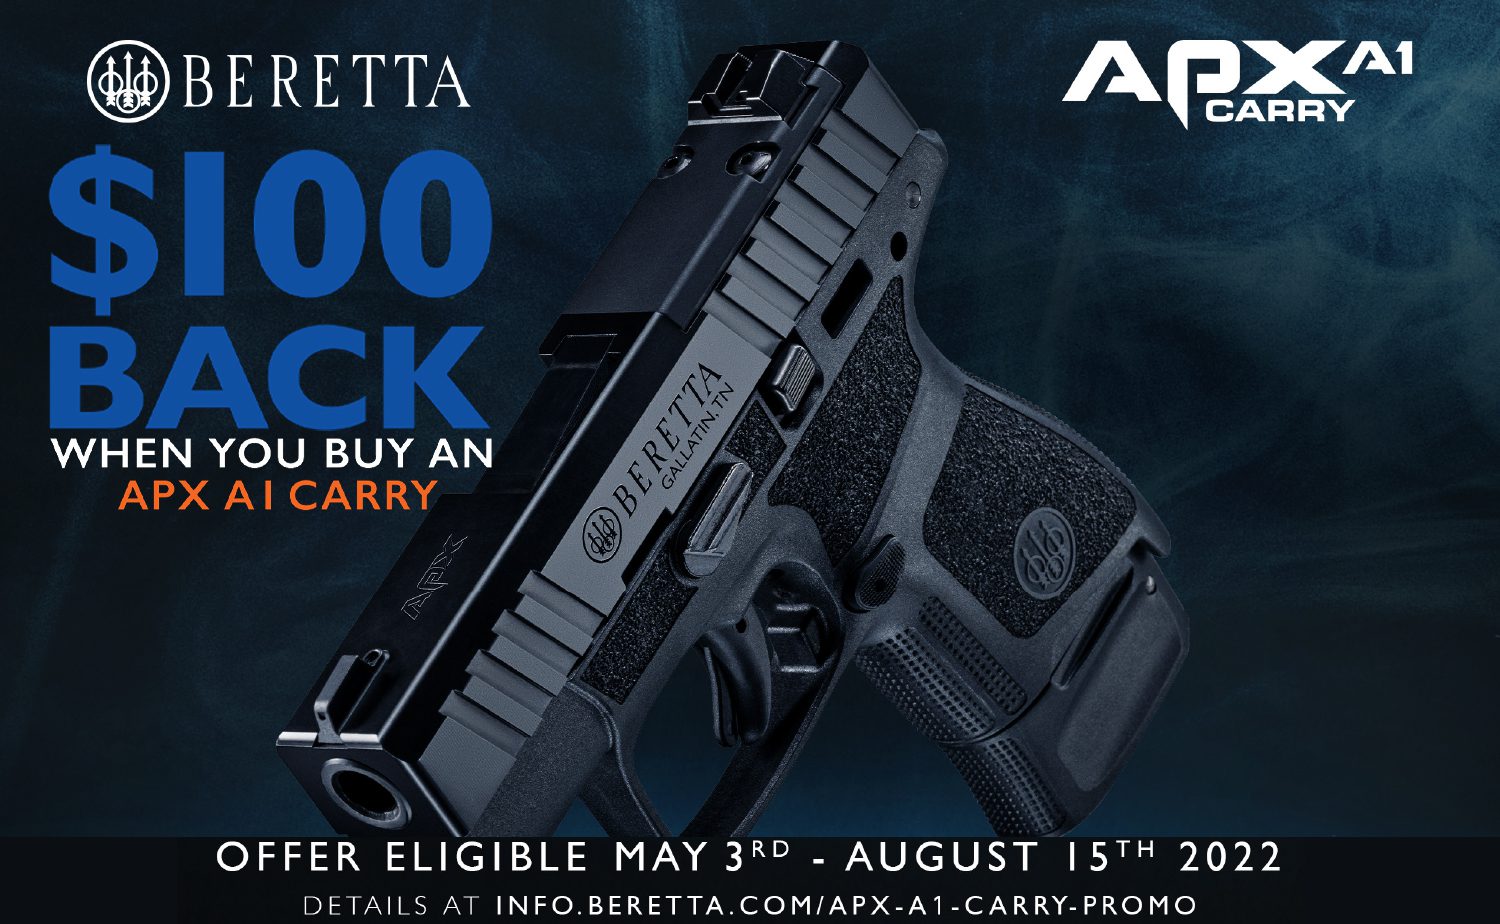 Beretta APX A1 Carry $100 Rebate